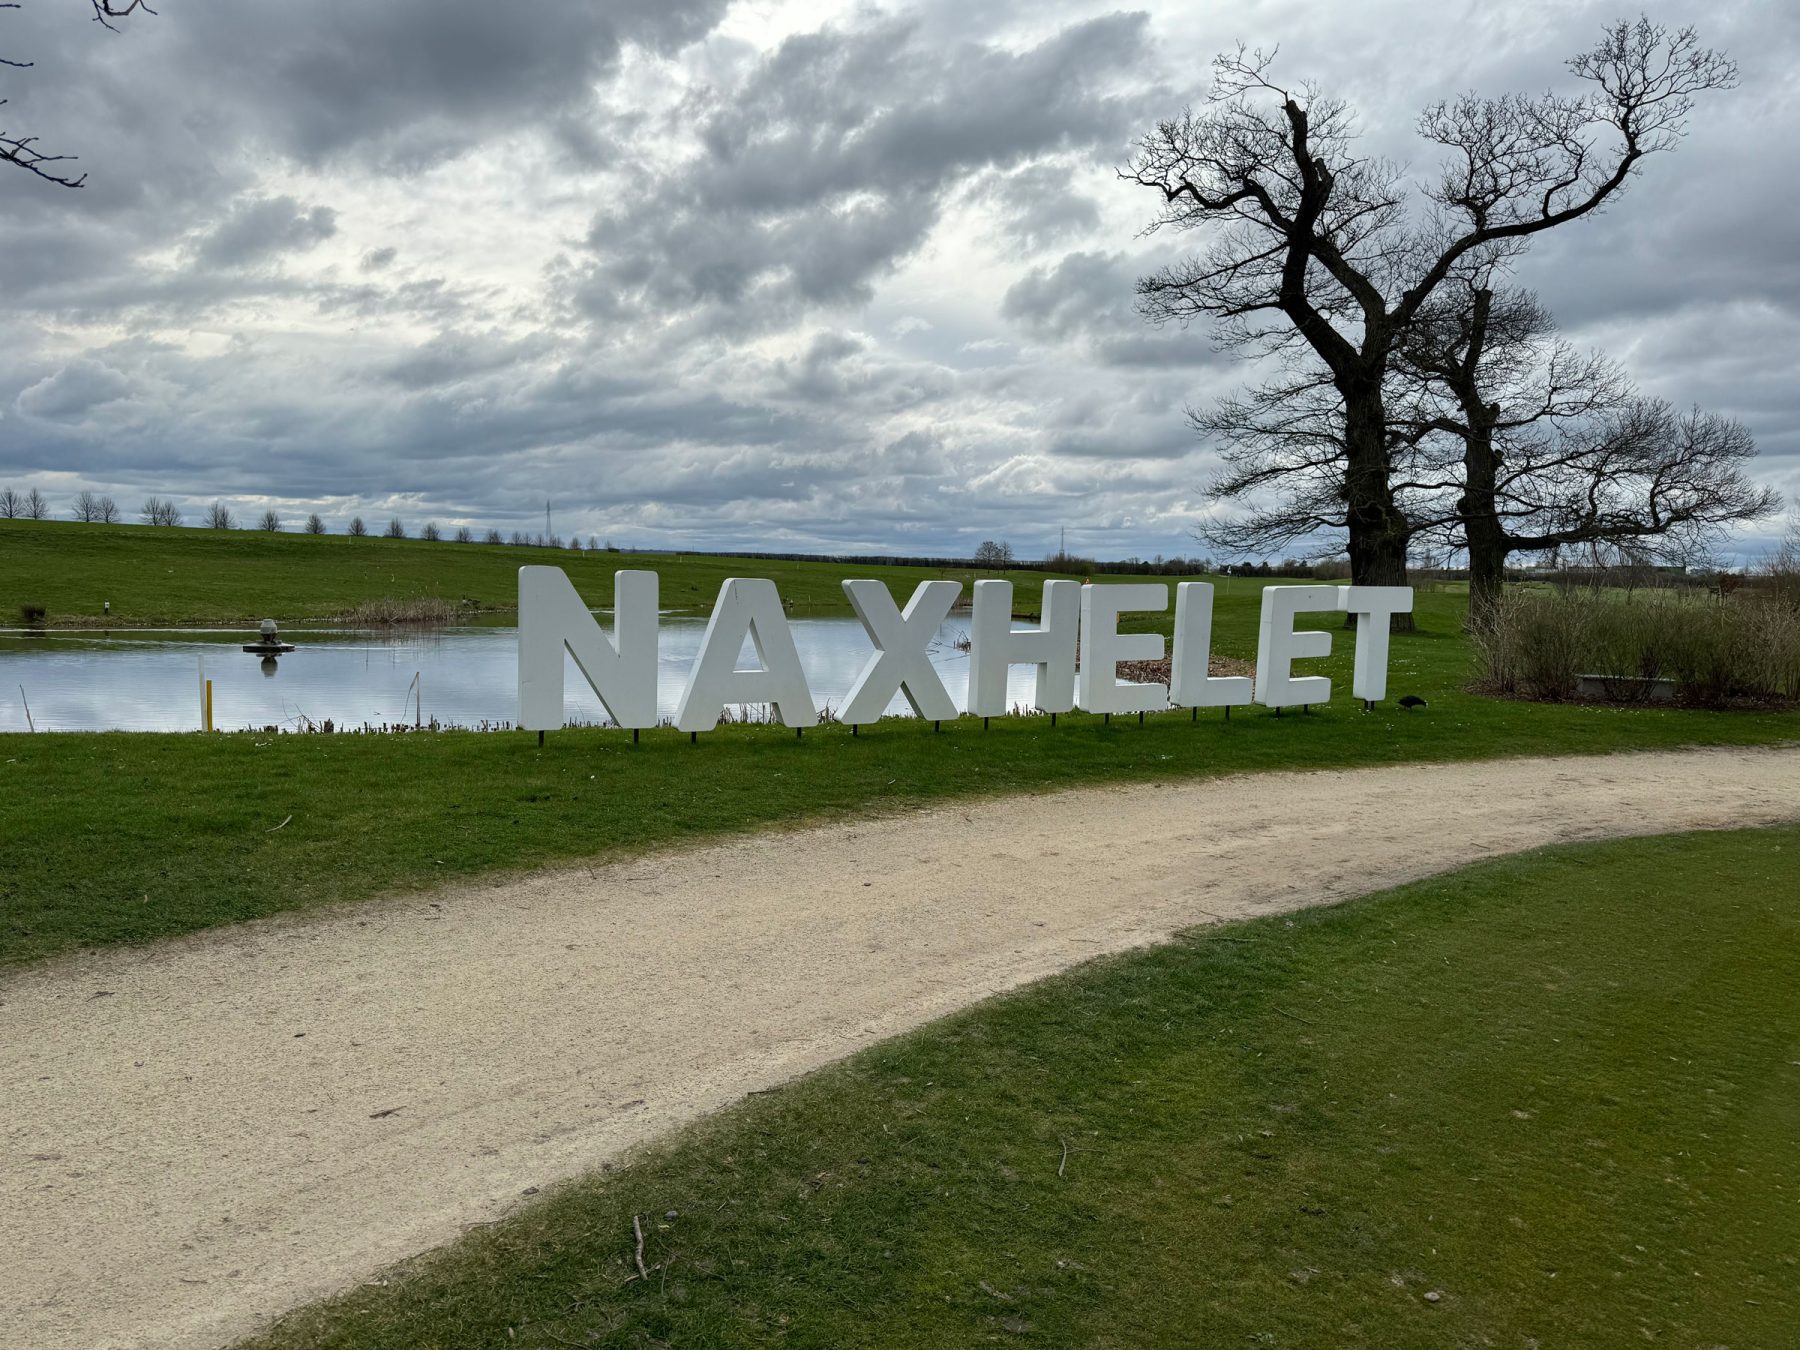 Entraînement interclubs de golf M4 à Naxhelet le dimanche